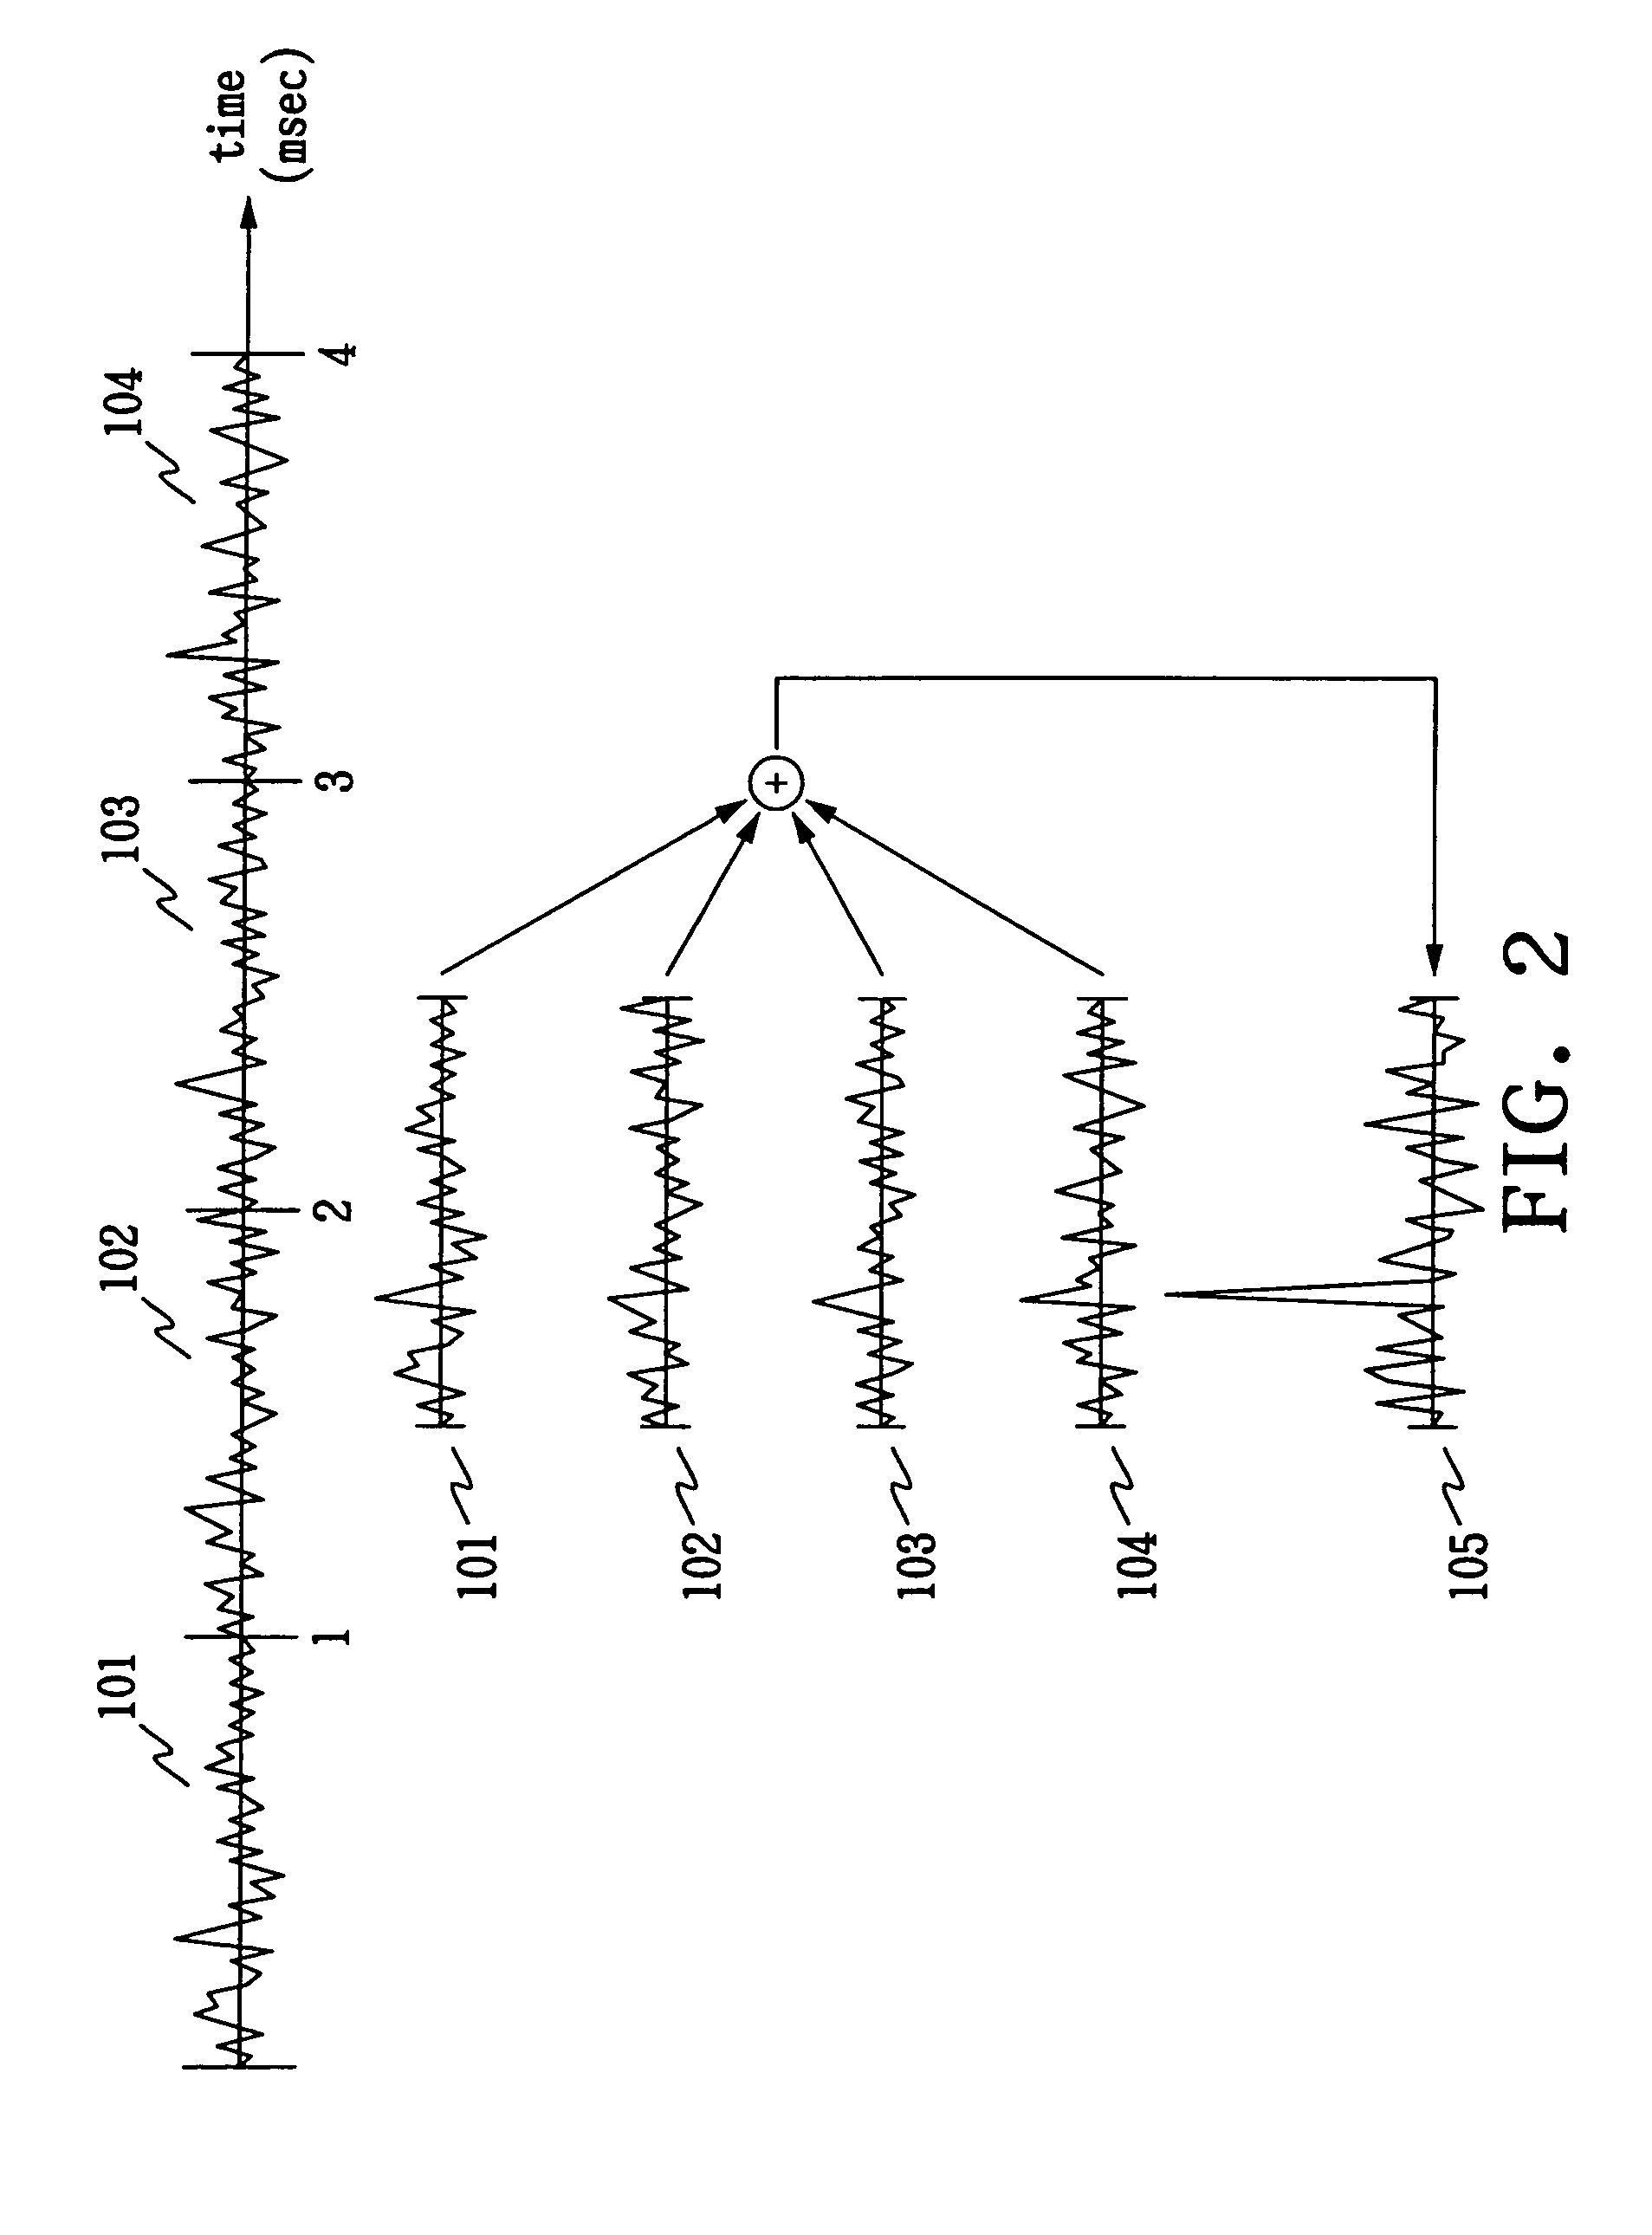 Apparatus and method for acquiring spread-spectrum signals